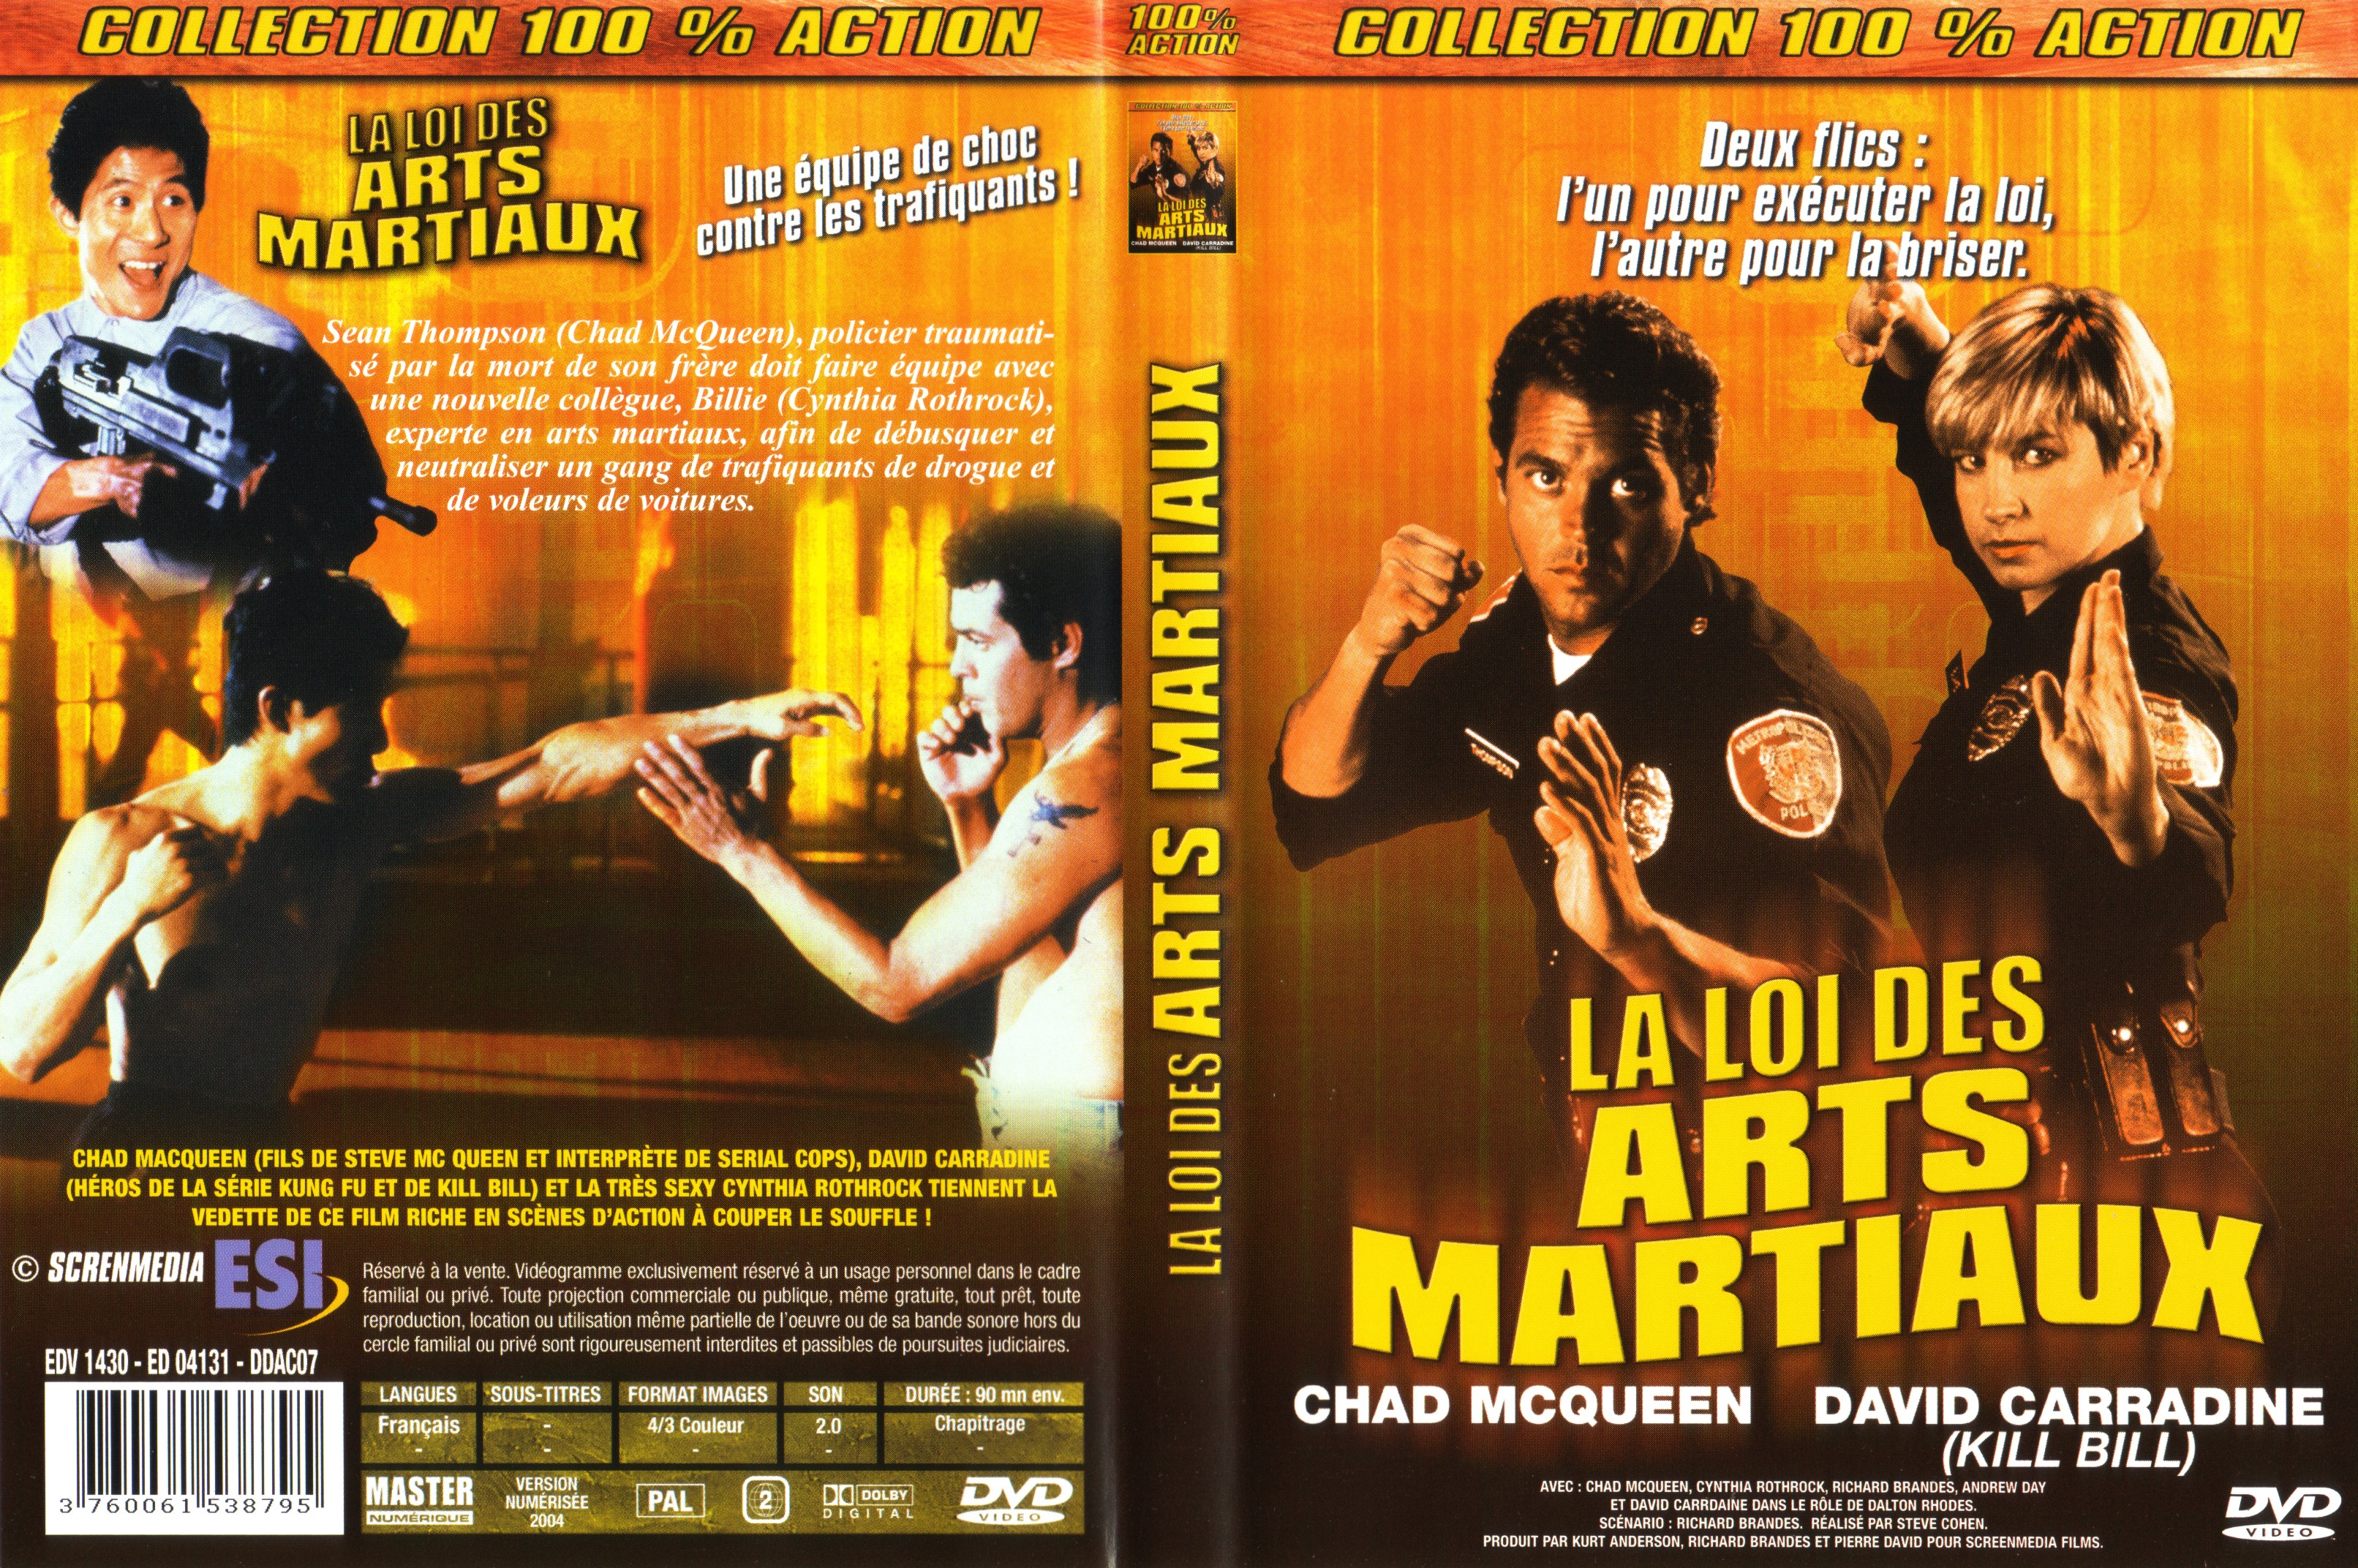 Jaquette DVD La loi des arts martiaux